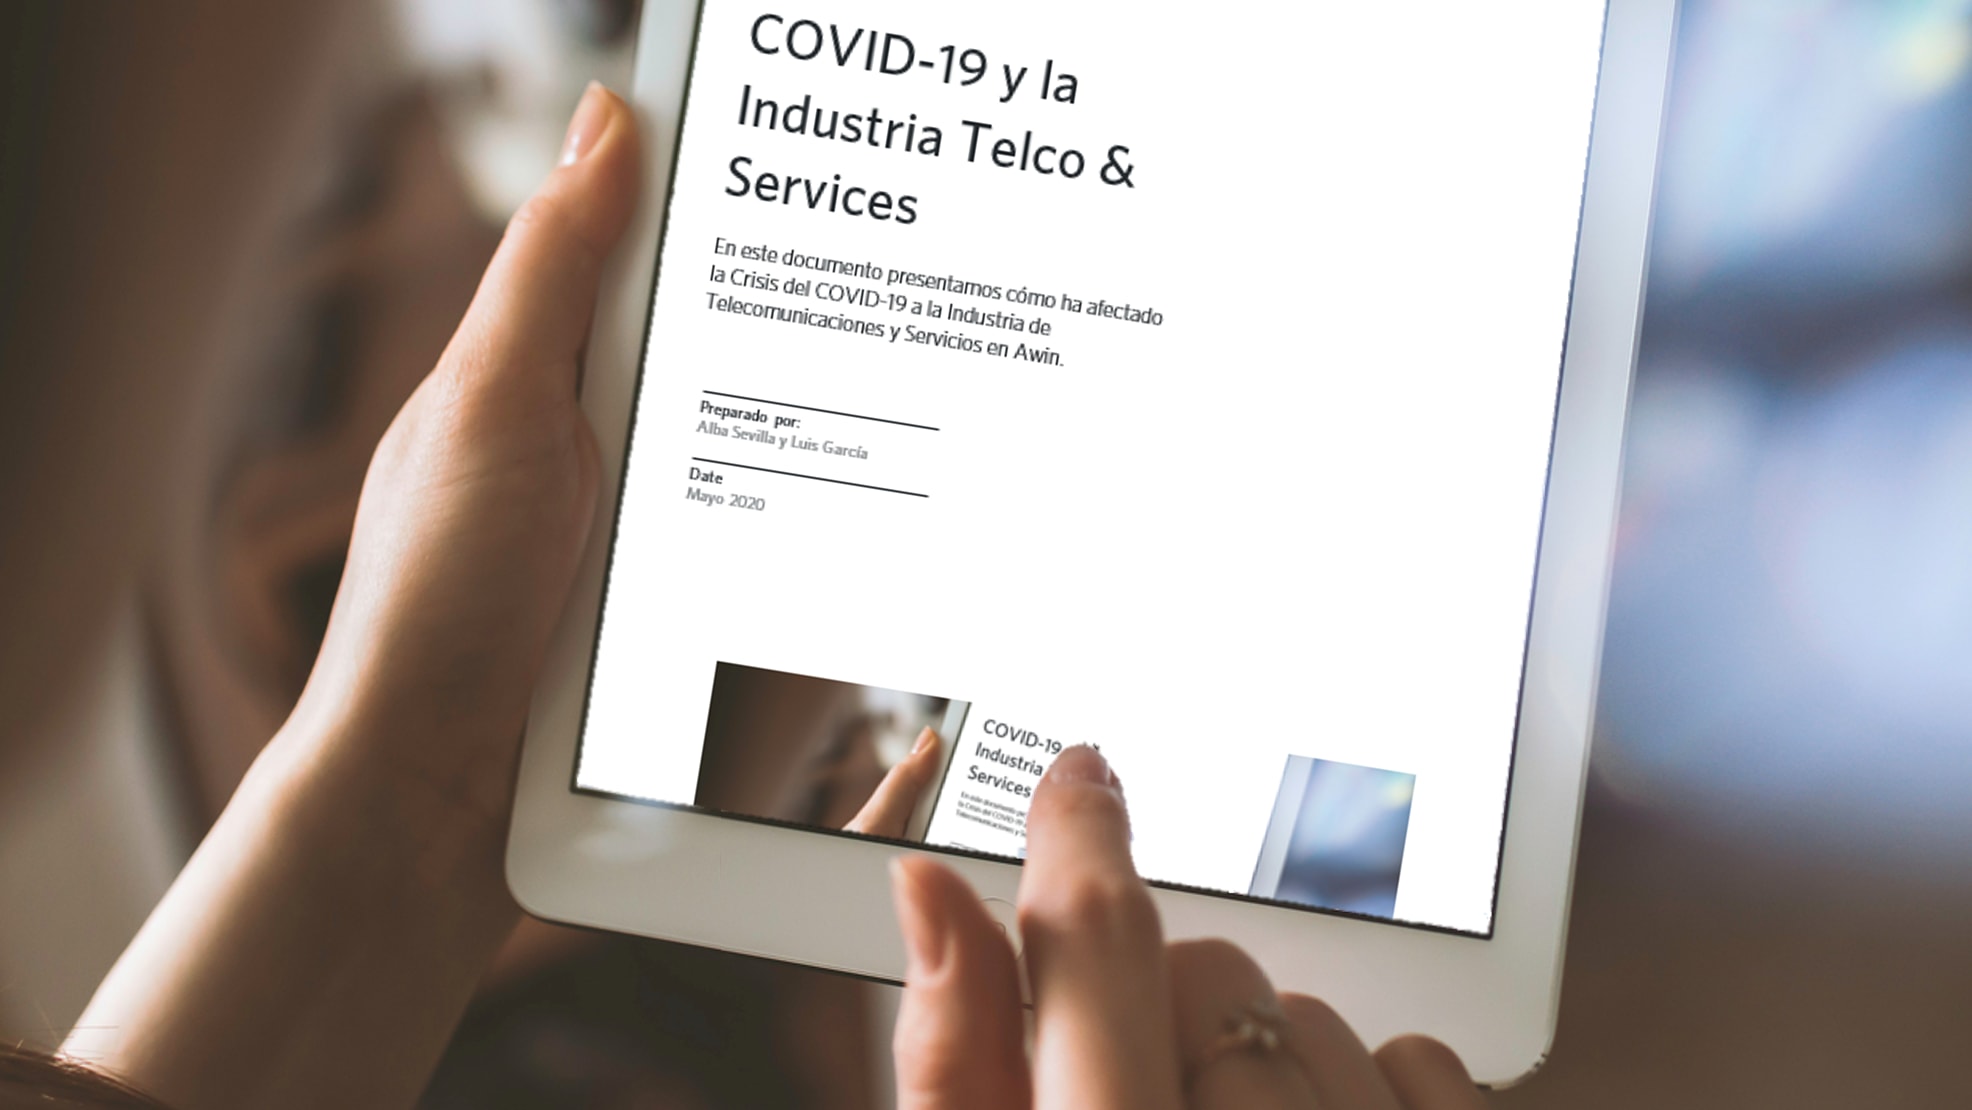 COVID-19 y la Industria Telco & Services